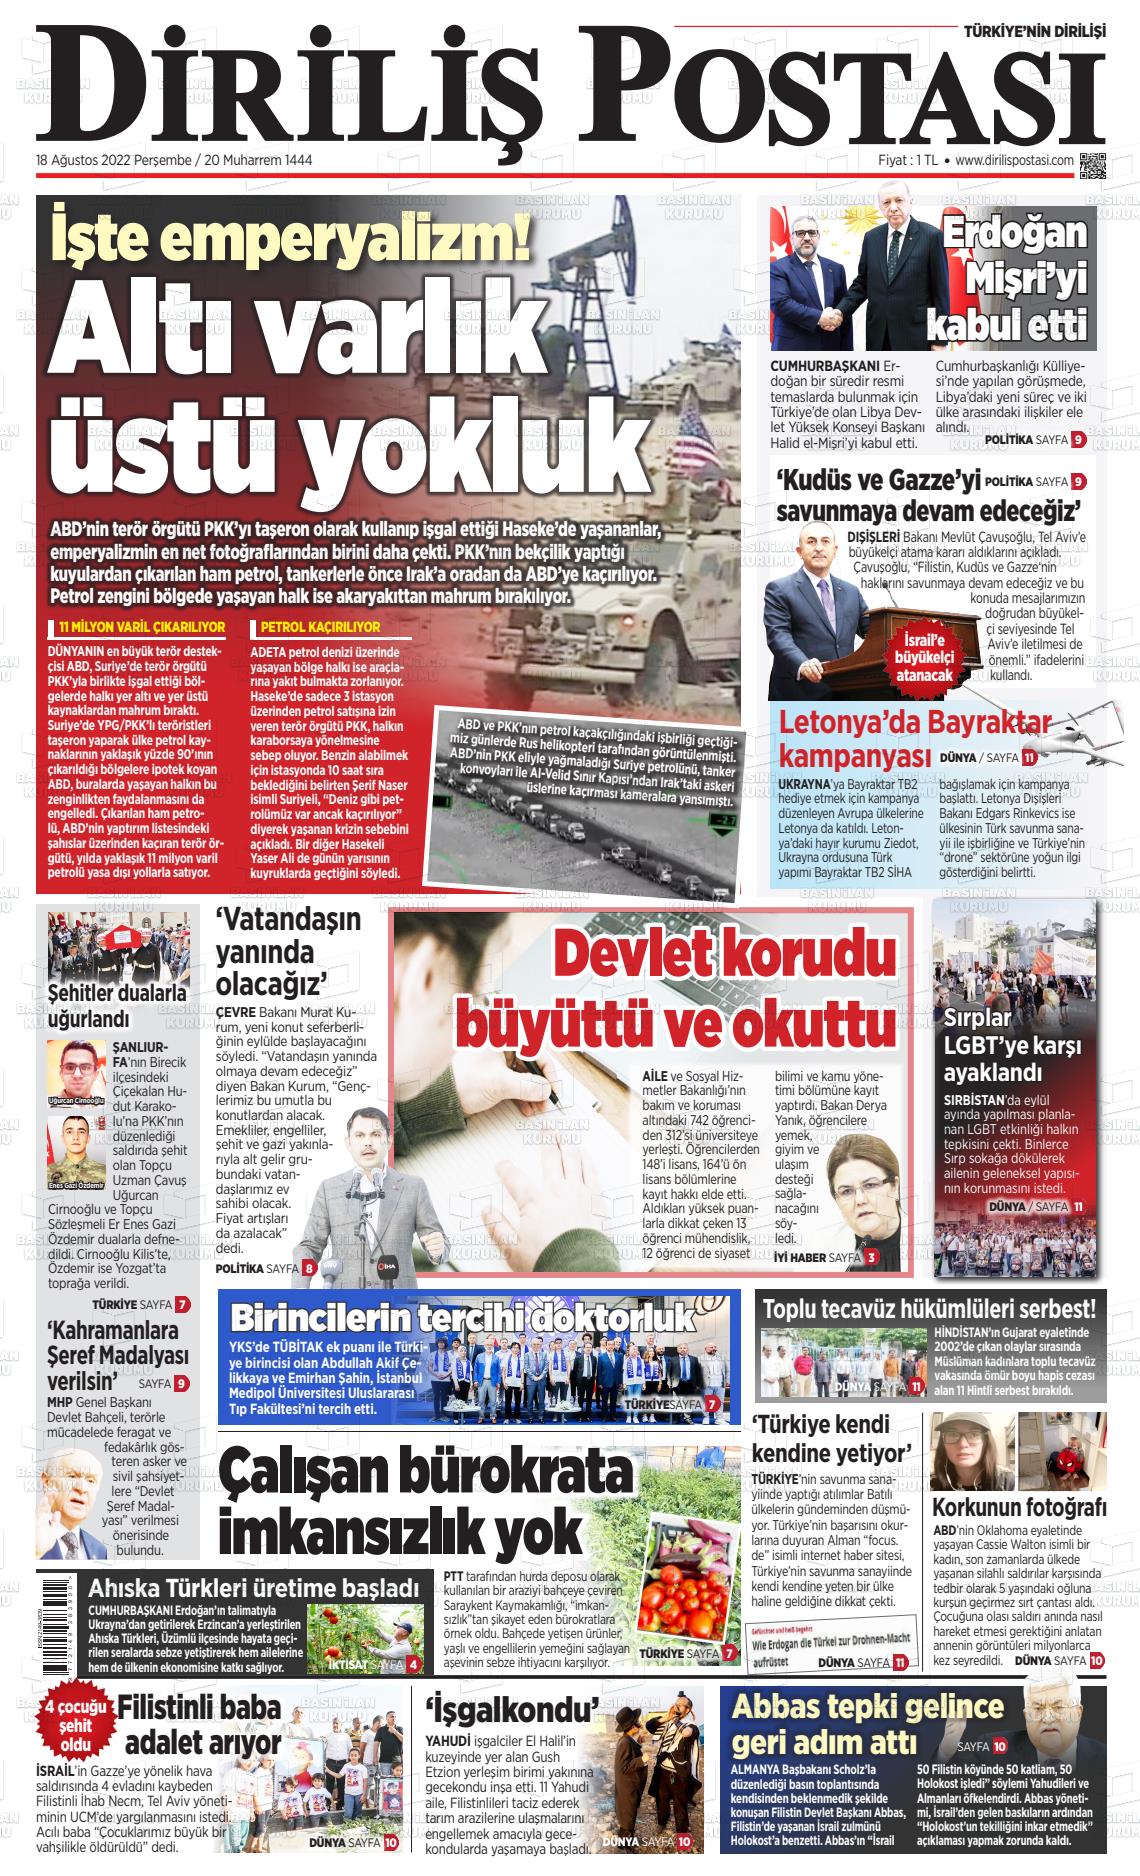 18 Ağustos 2022 Diriliş Postası Gazete Manşeti